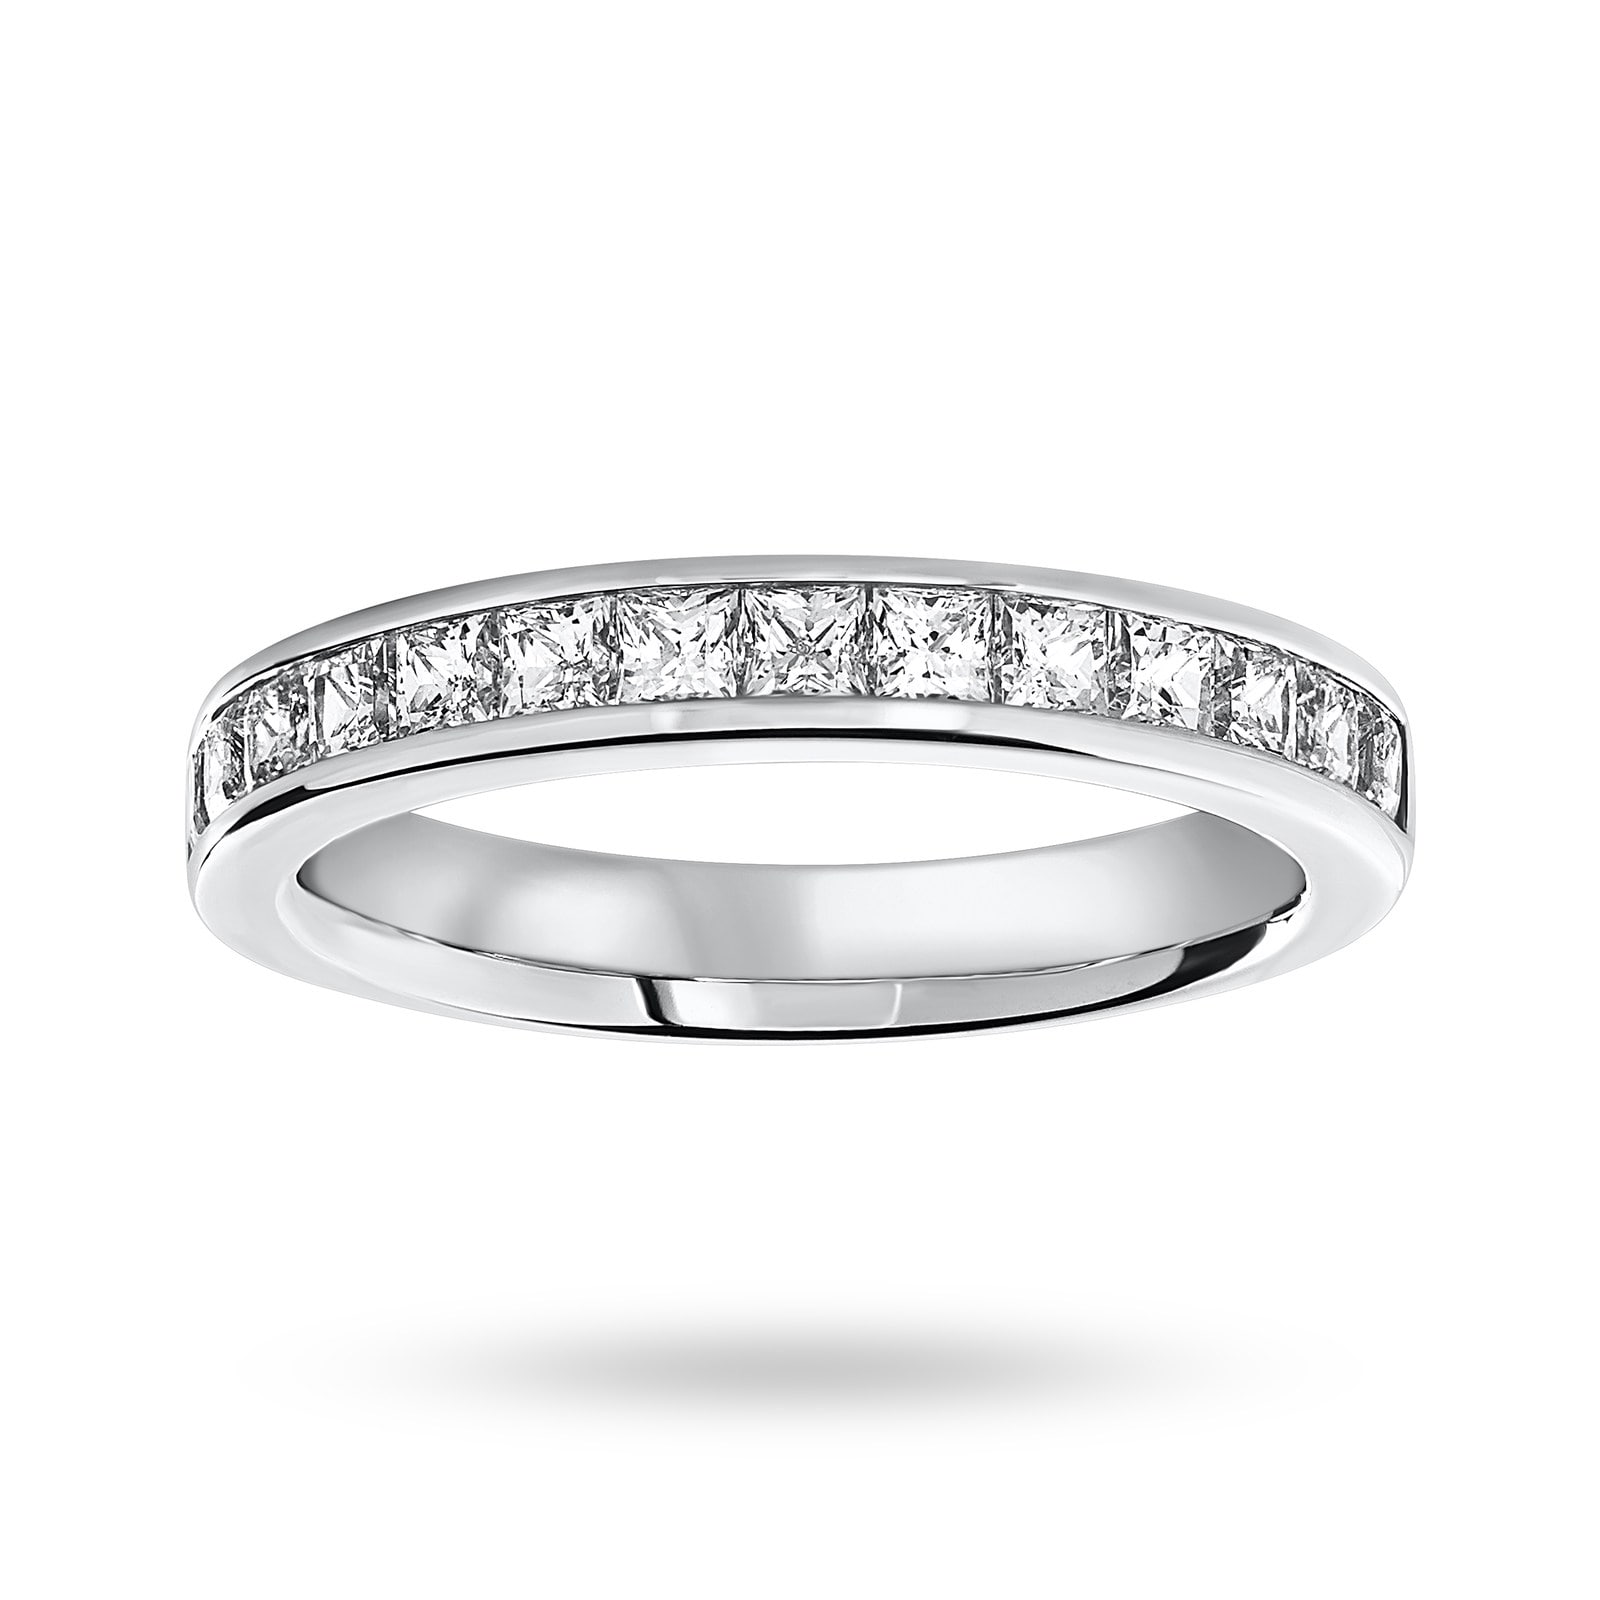 9 Carat White Gold 1.00 Carat Princess Cut Half Eternity Ring - Ring Size M